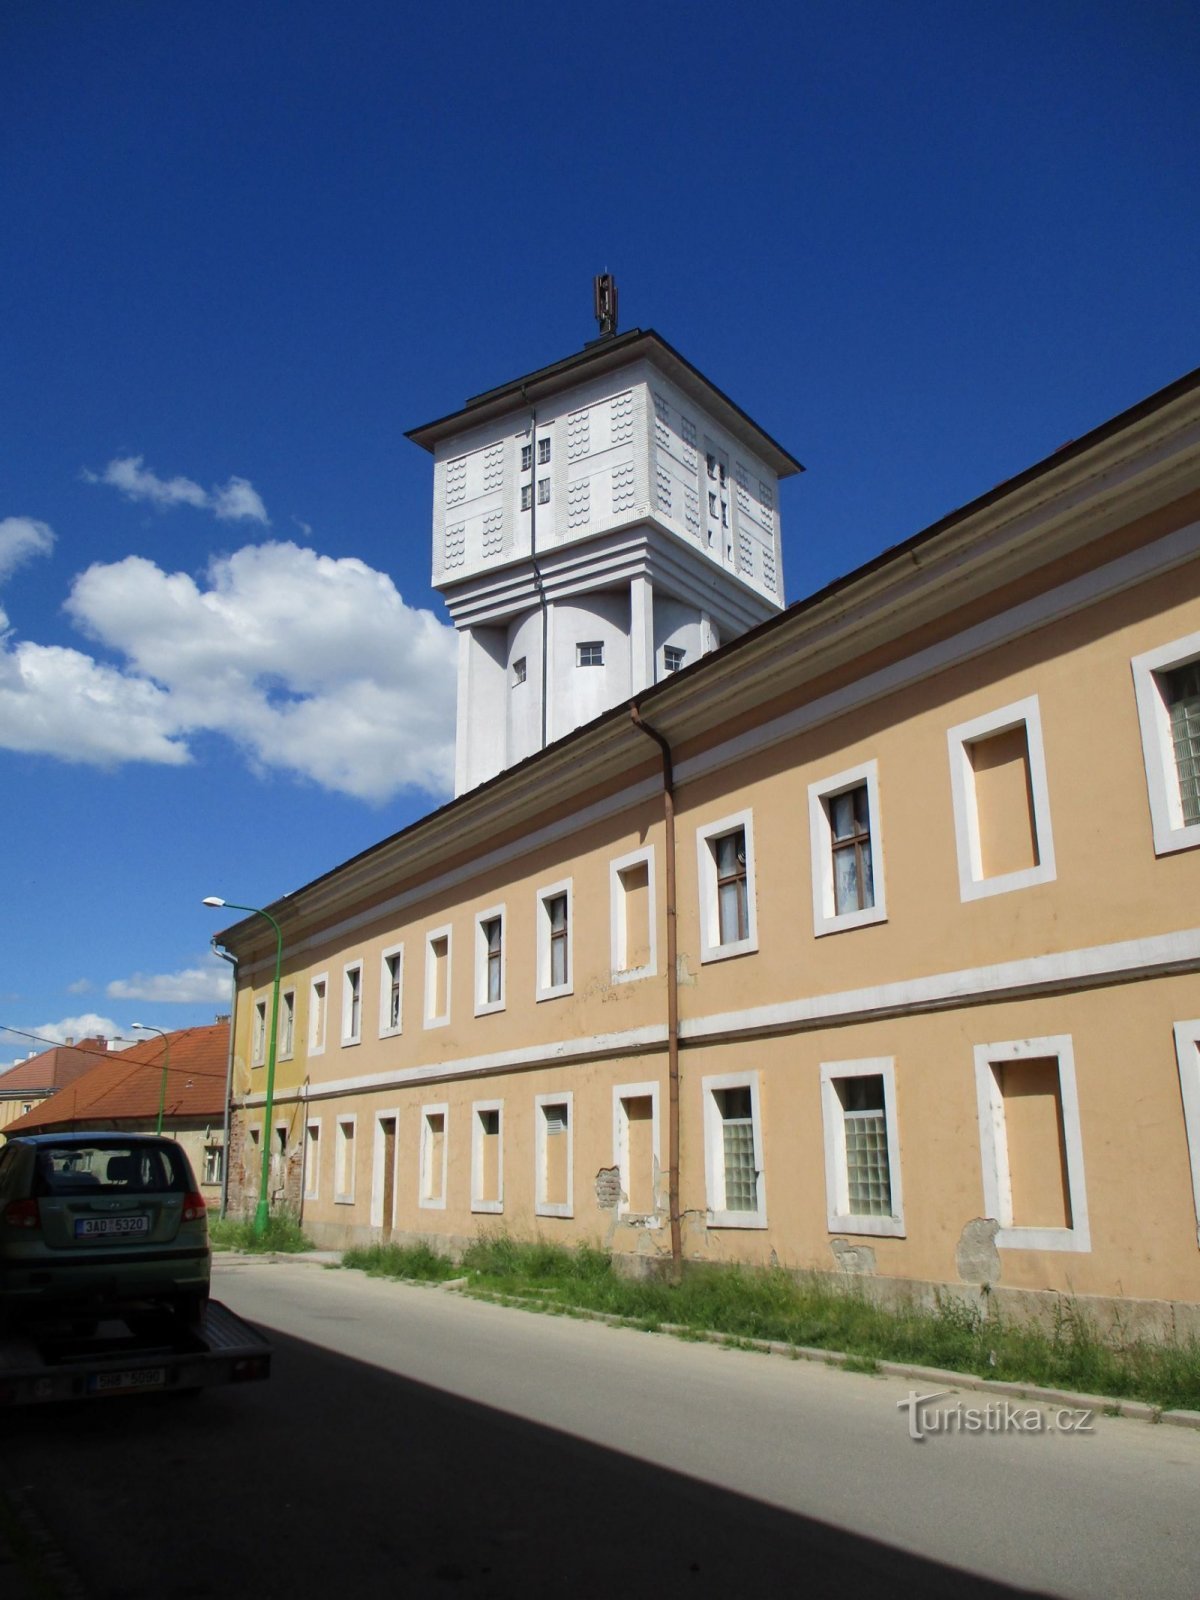 Turnul de apă la fosta fabrică de bere (Josefov, 1,6,2020 iunie XNUMX)